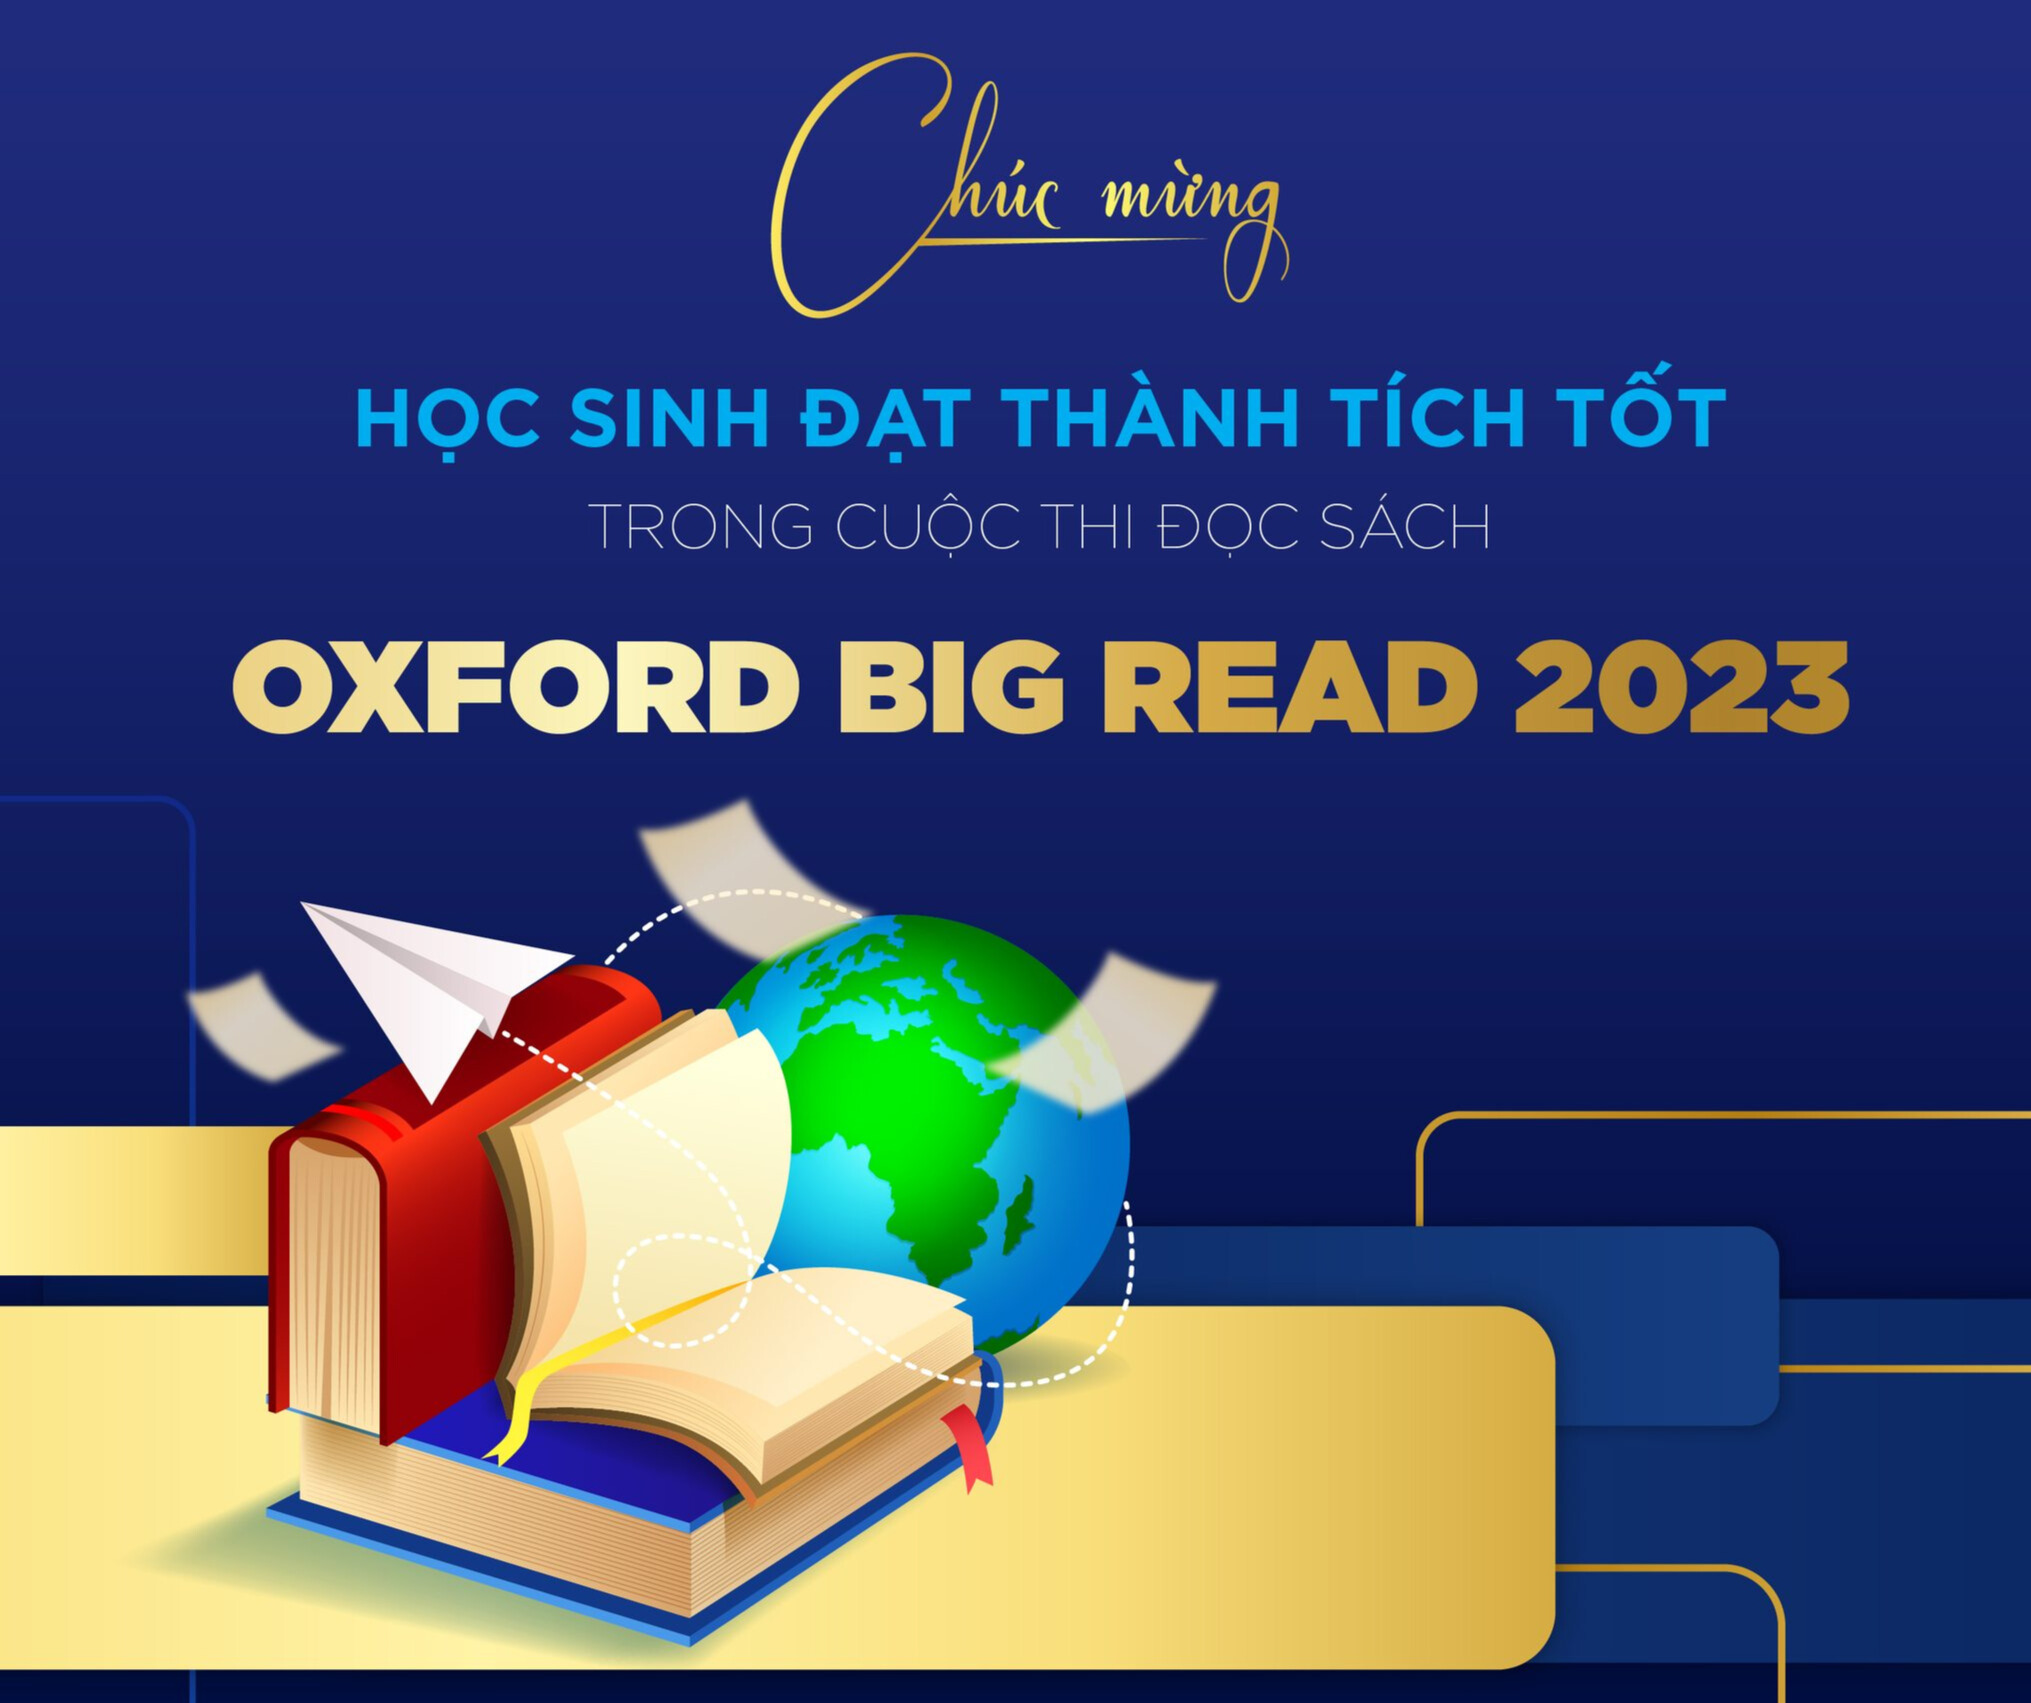 IPS chúc mừng các em học sinh đạt thành tích tốt trong cuộc thi đọc sách Oxford Big Read 2023.